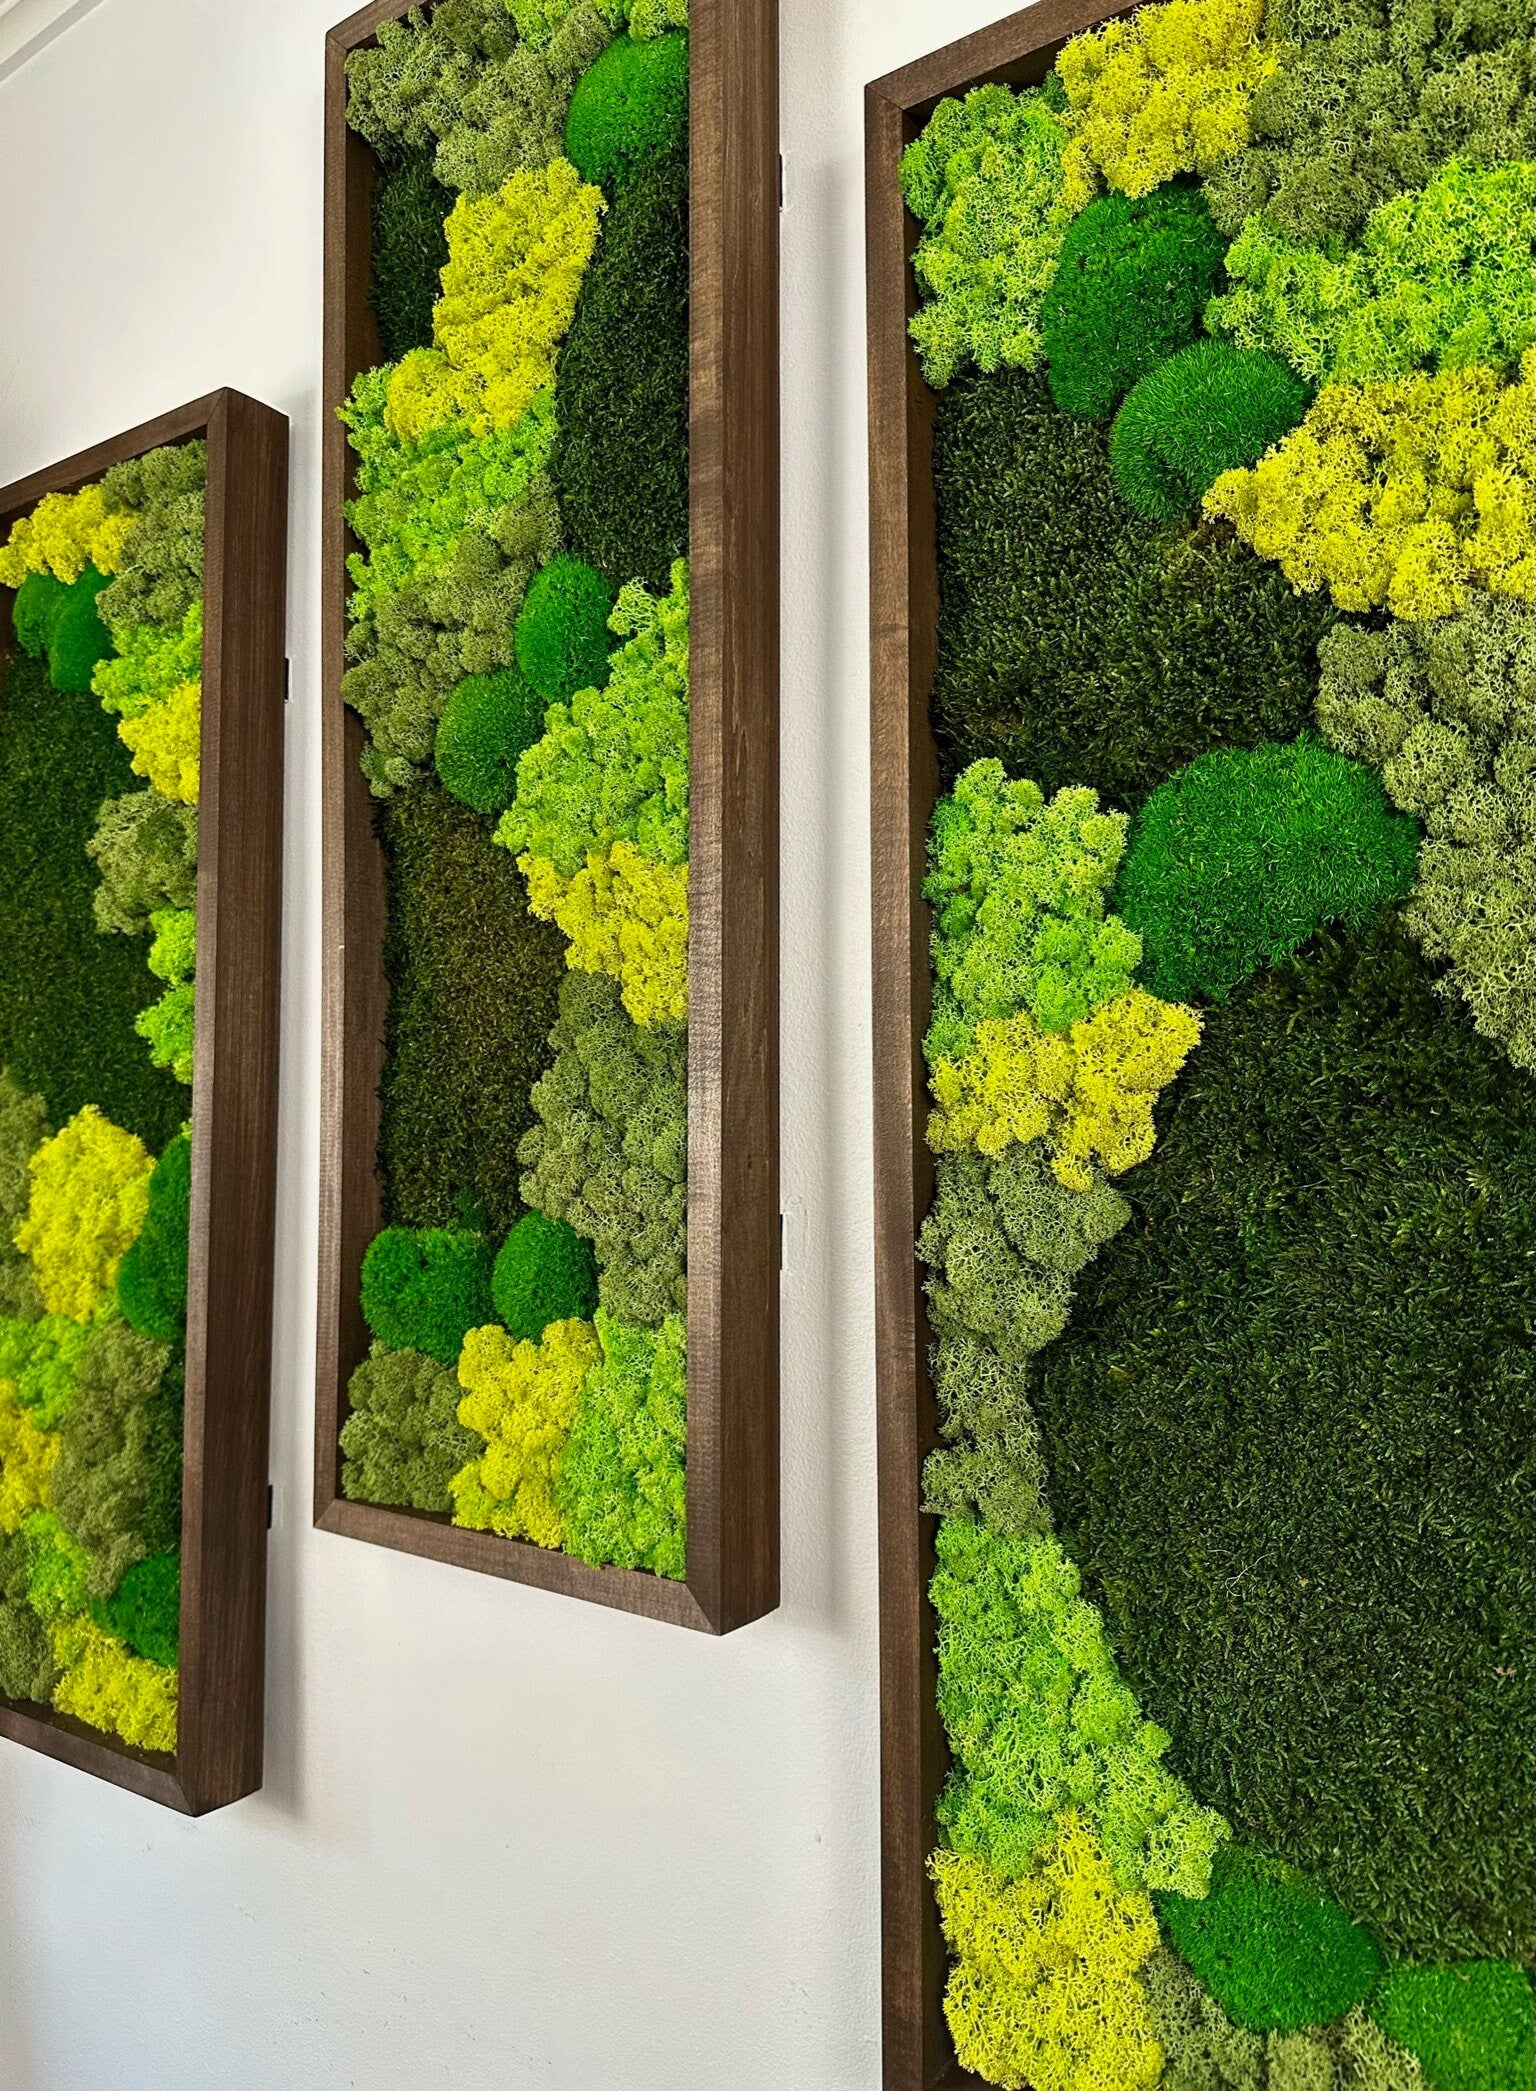 Moss Wall Art | Preserved Moss Art | Moss Wall Decor | Moss Wall Sets |  Large Rectangle Single - Six Set | Green Reindeer Sheet + Pole Moss